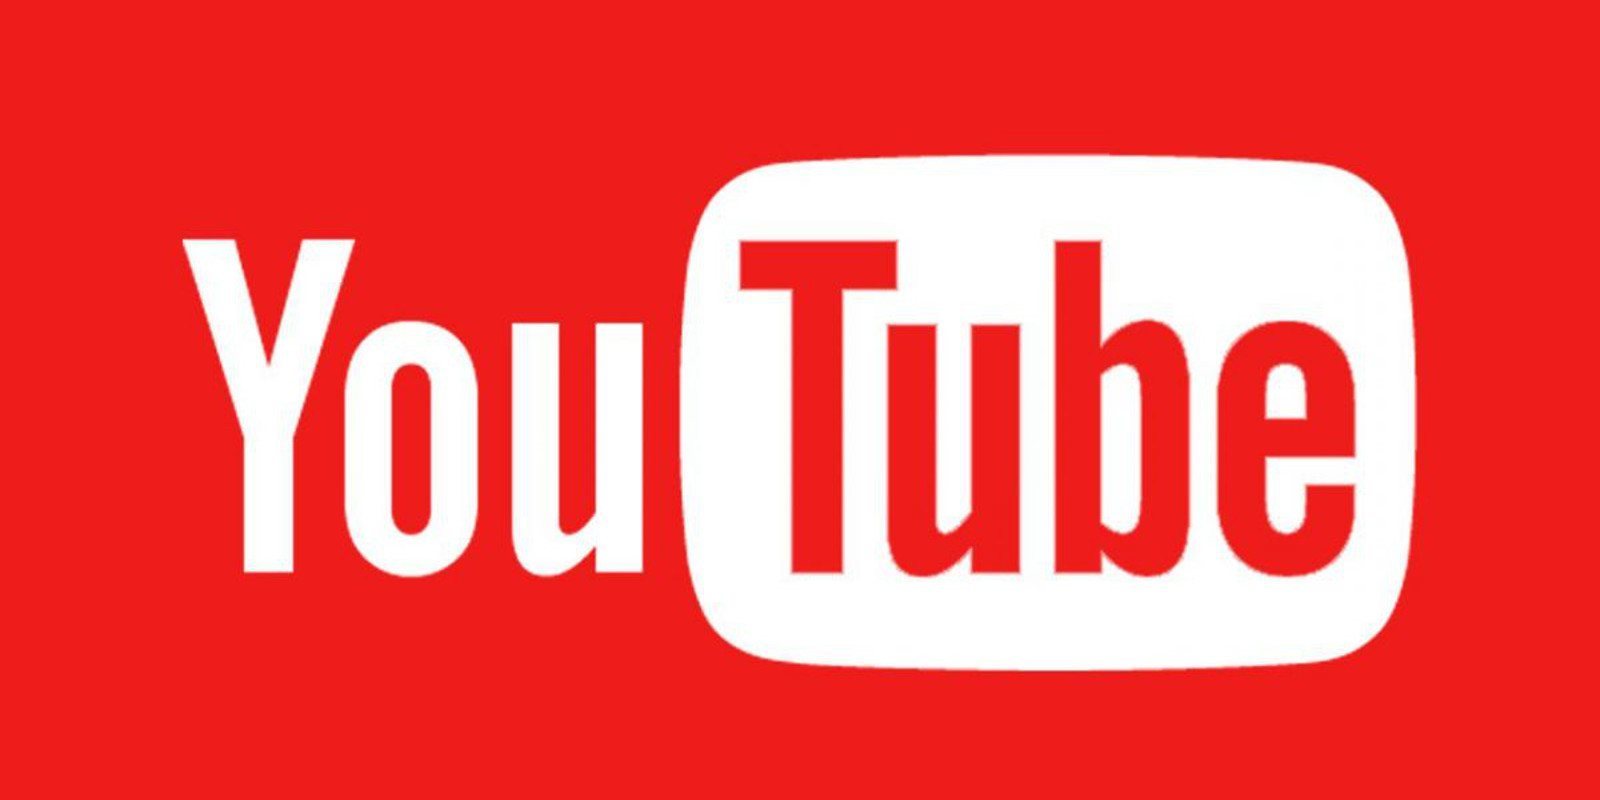 YouTube introduce una nueva forma de descubrir canales relacionados